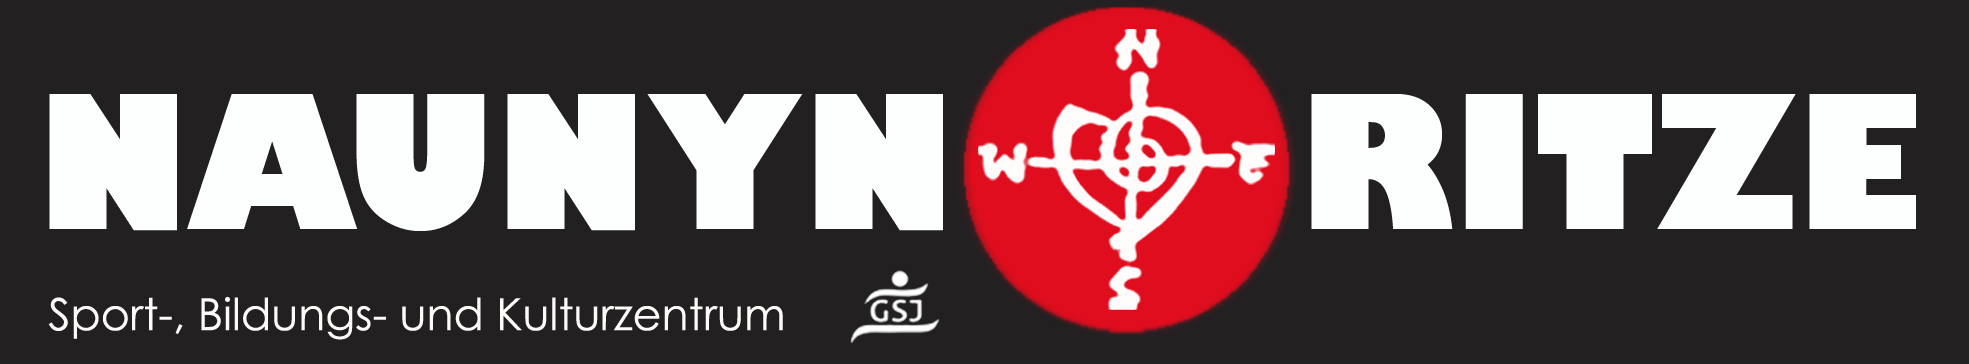 Logo of NaunynRitze